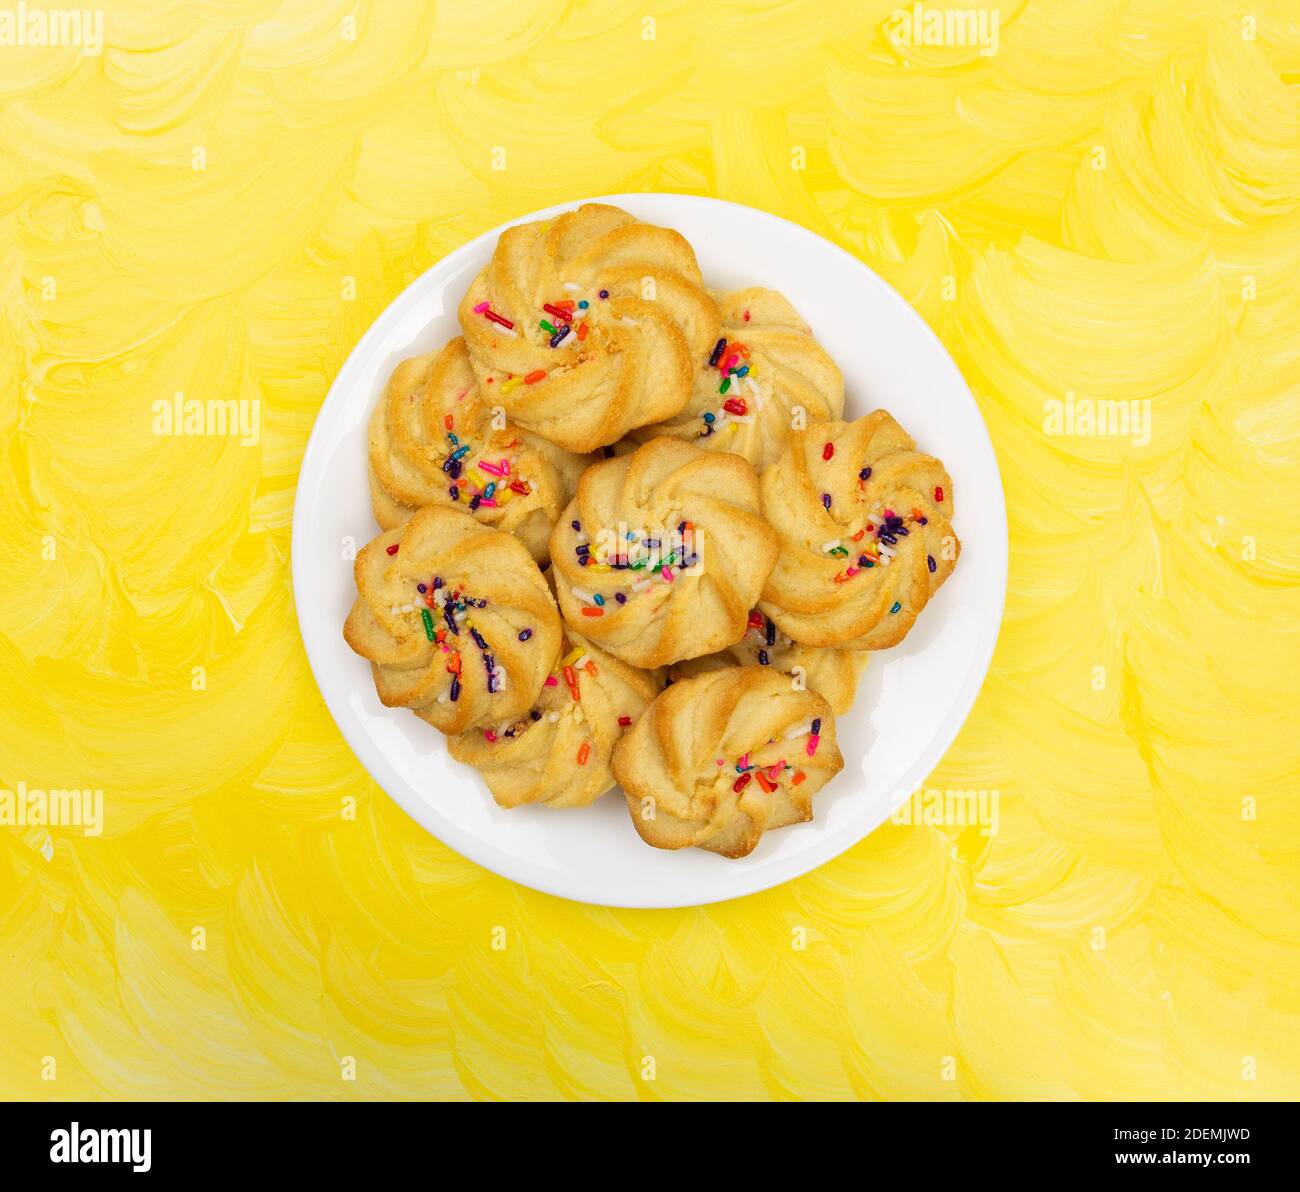 Draufsicht auf einen weißen Teller, gefüllt mit Shortbread-Keksen mit Streuseln auf einer gelb lackierten Tischplatte. Stockfoto